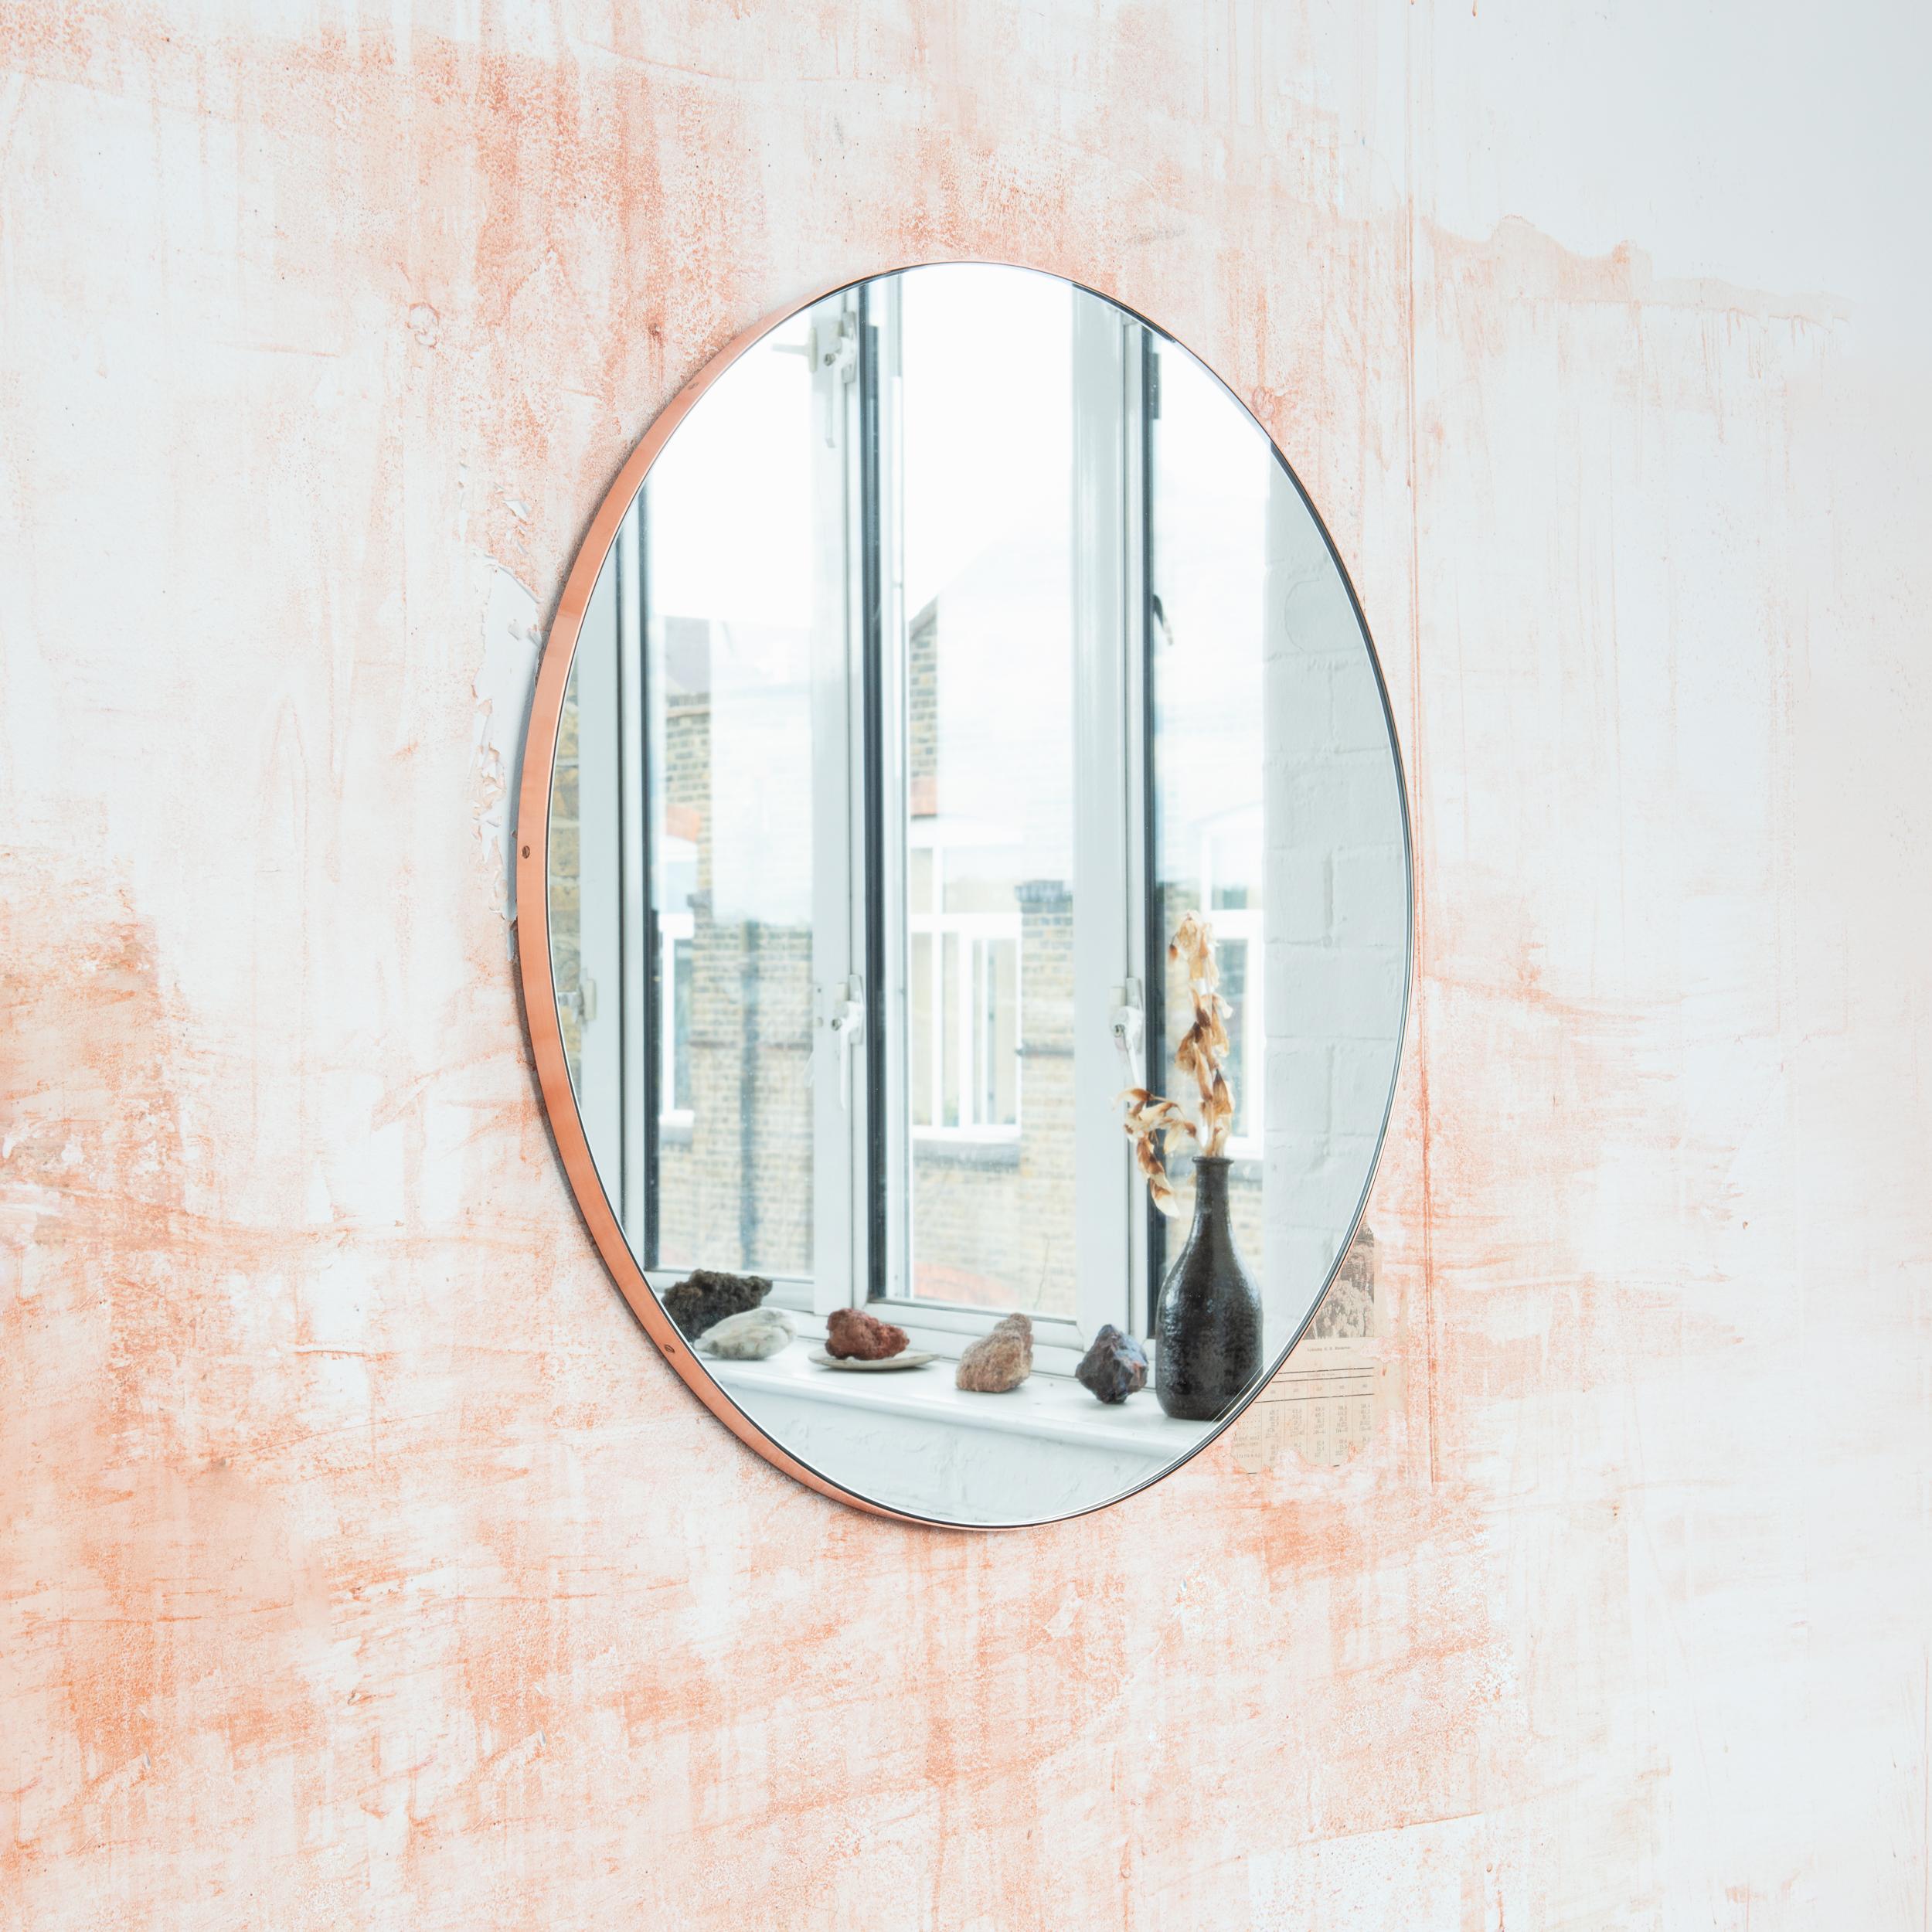 Miroir rond minimaliste avec un élégant cadre en cuivre brossé. Les détails et la finition, y compris les vis cuivrées visibles, soulignent l'aspect artisanal et la qualité du miroir, véritable signature de notre marque. Conçu et fabriqué à la main